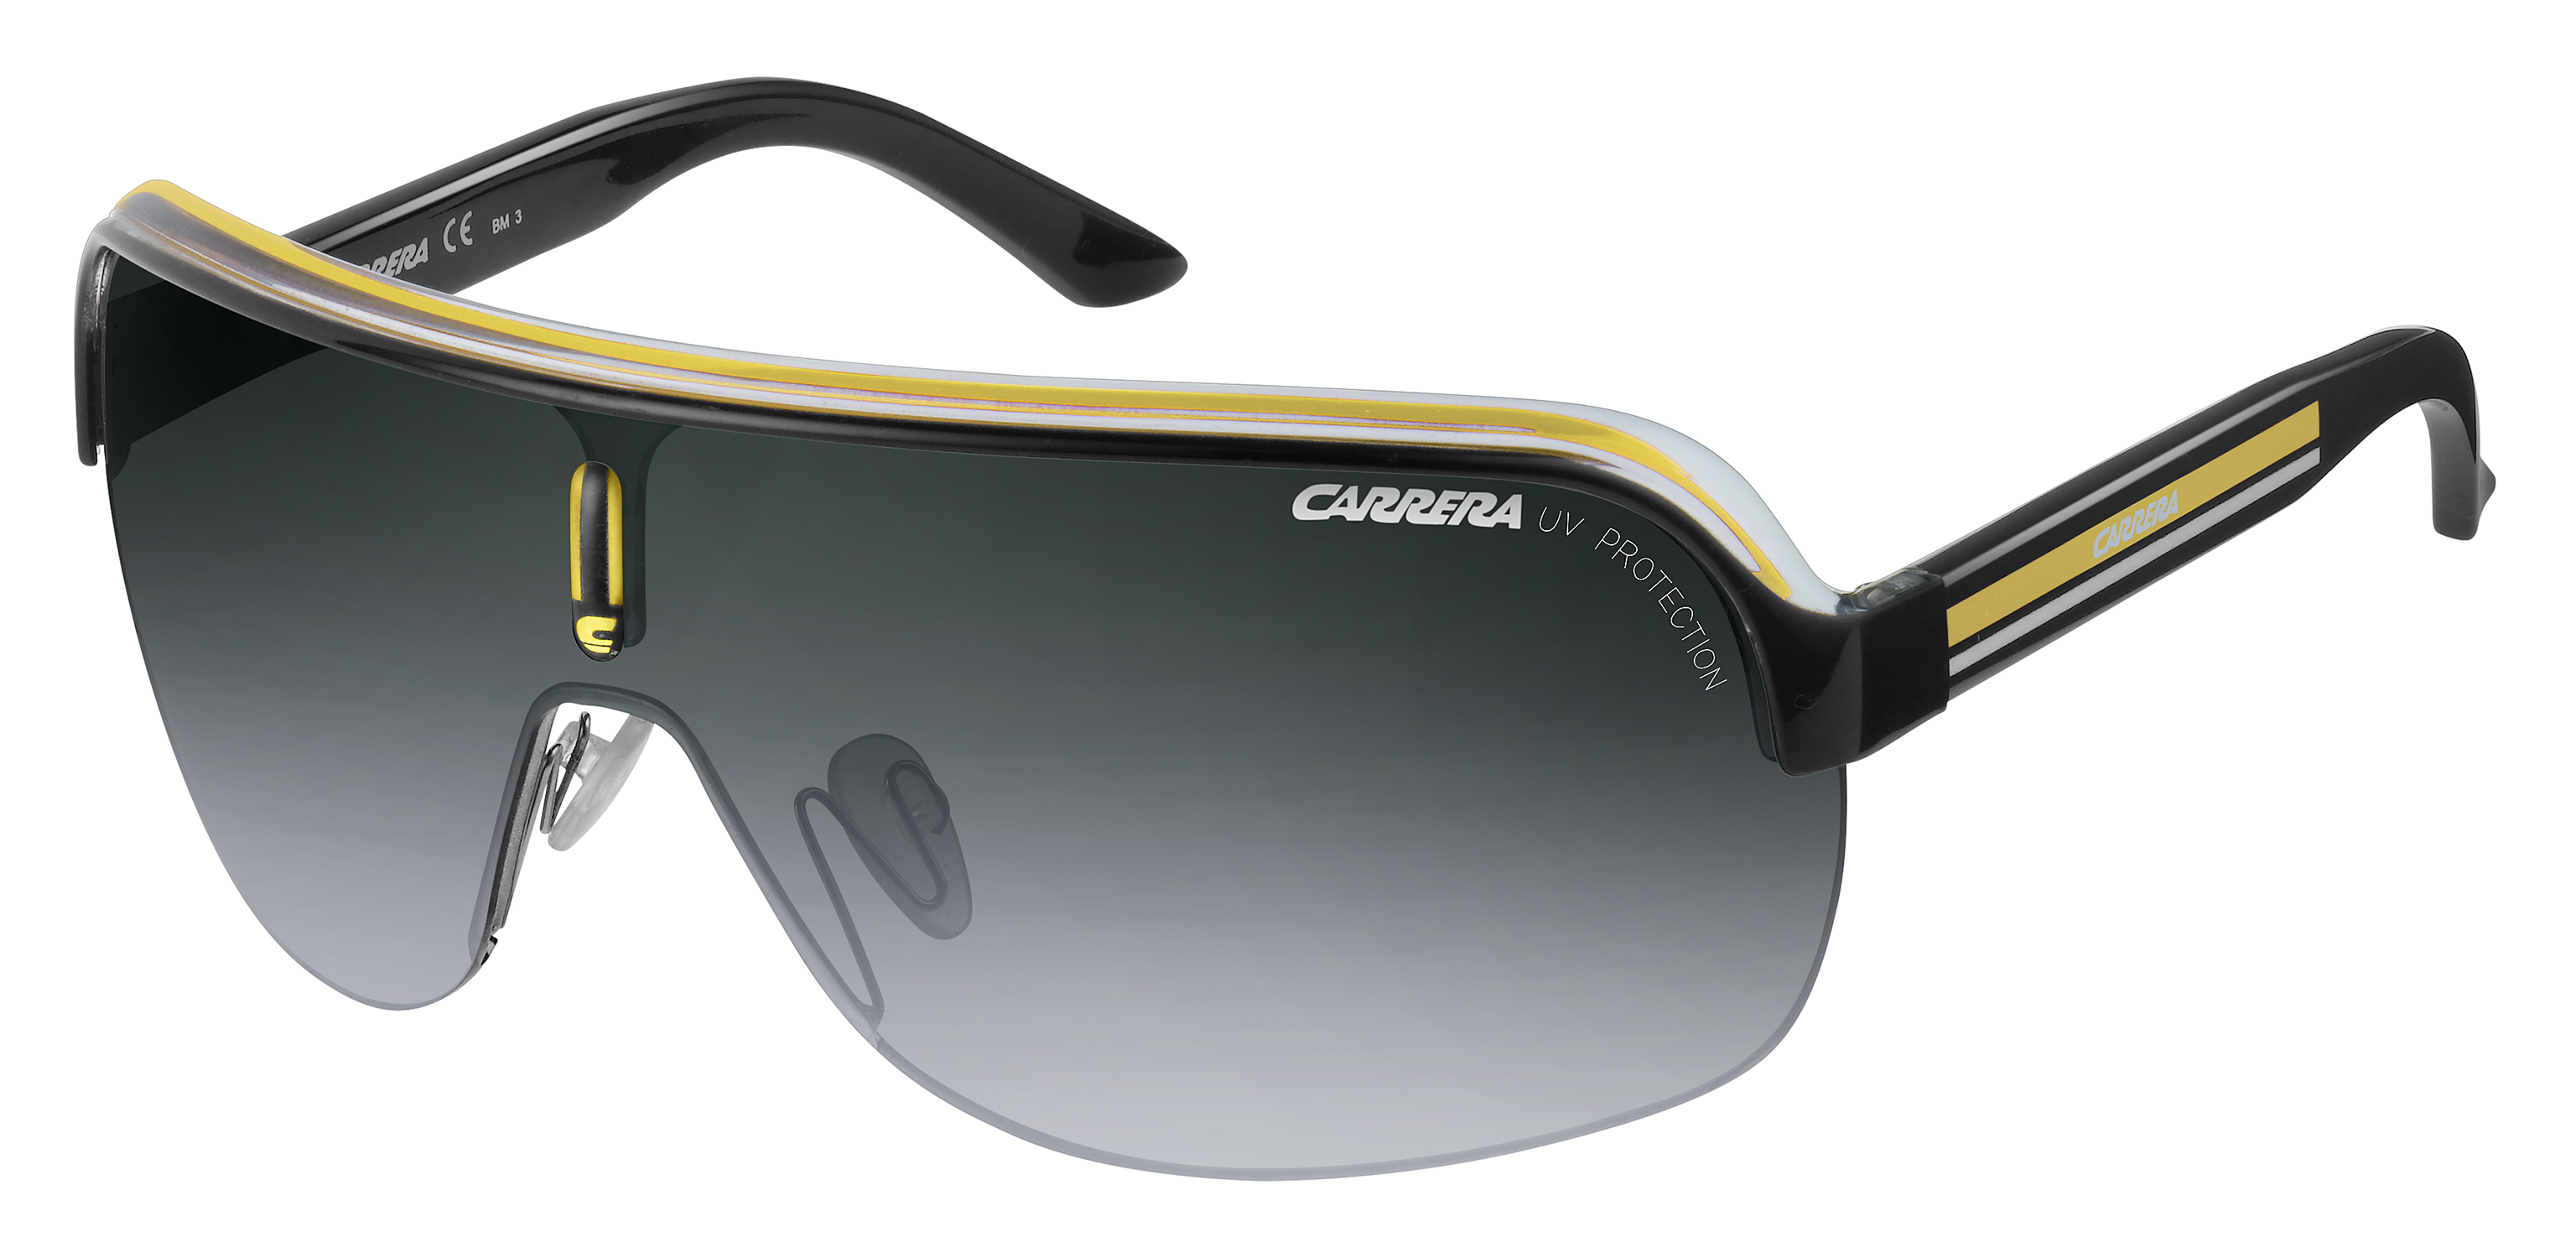 Очки Каррера s298 003. Carrera 296/s Polarized очки. Солнцезащитные очки Carrera 5002. Очки Порше Каррера. Купить очки солнцезащитные мужские брендовые looktrue